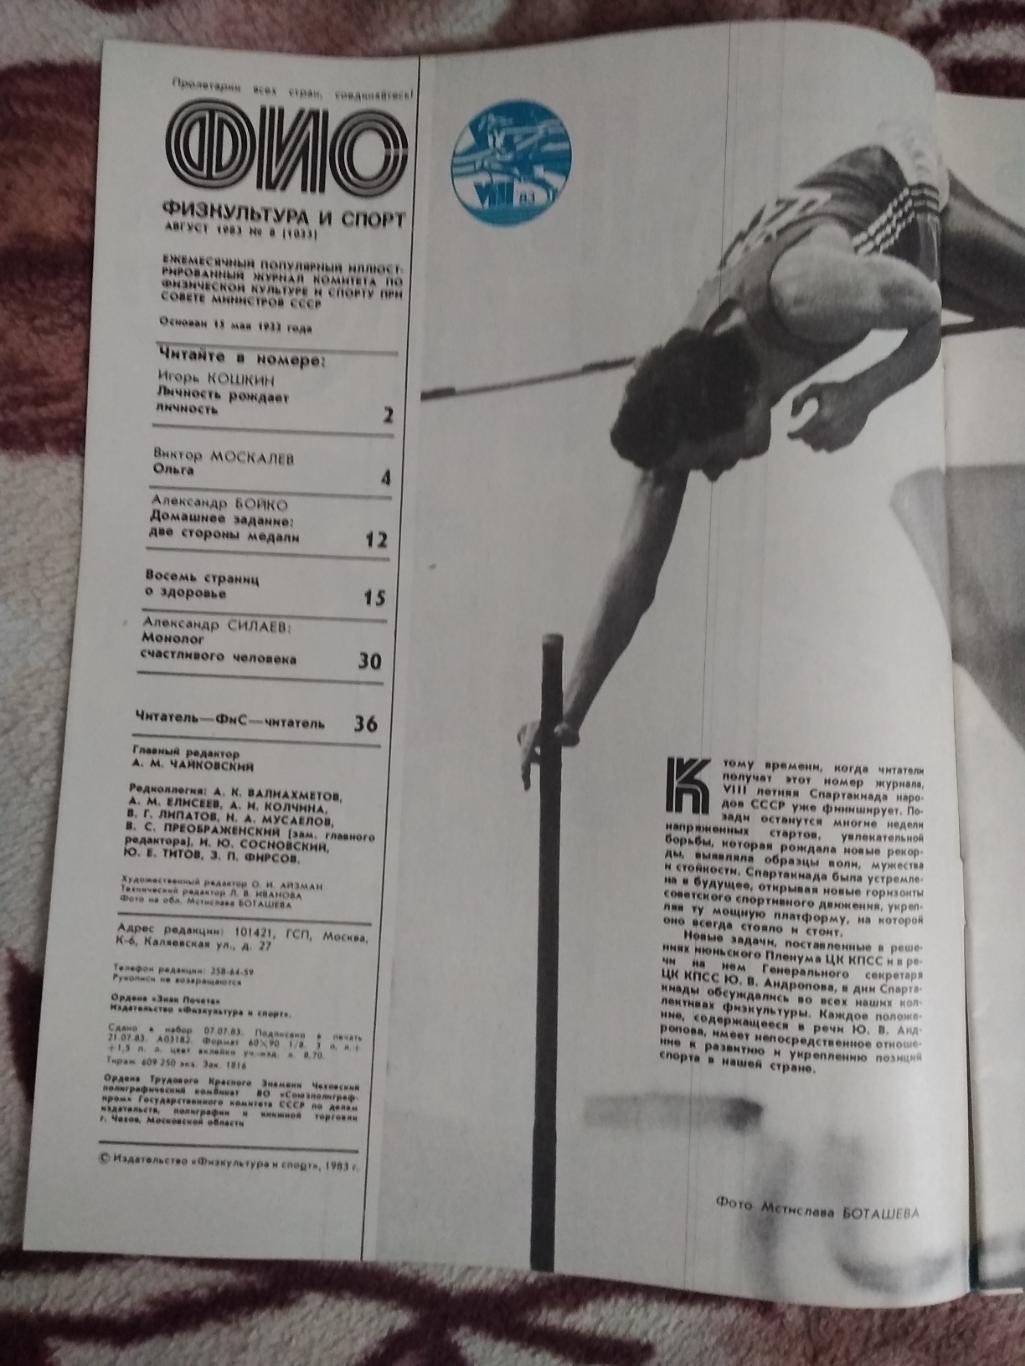 Журнал.Физкультура и спорт № 8 1983 г. (ФиС). 1